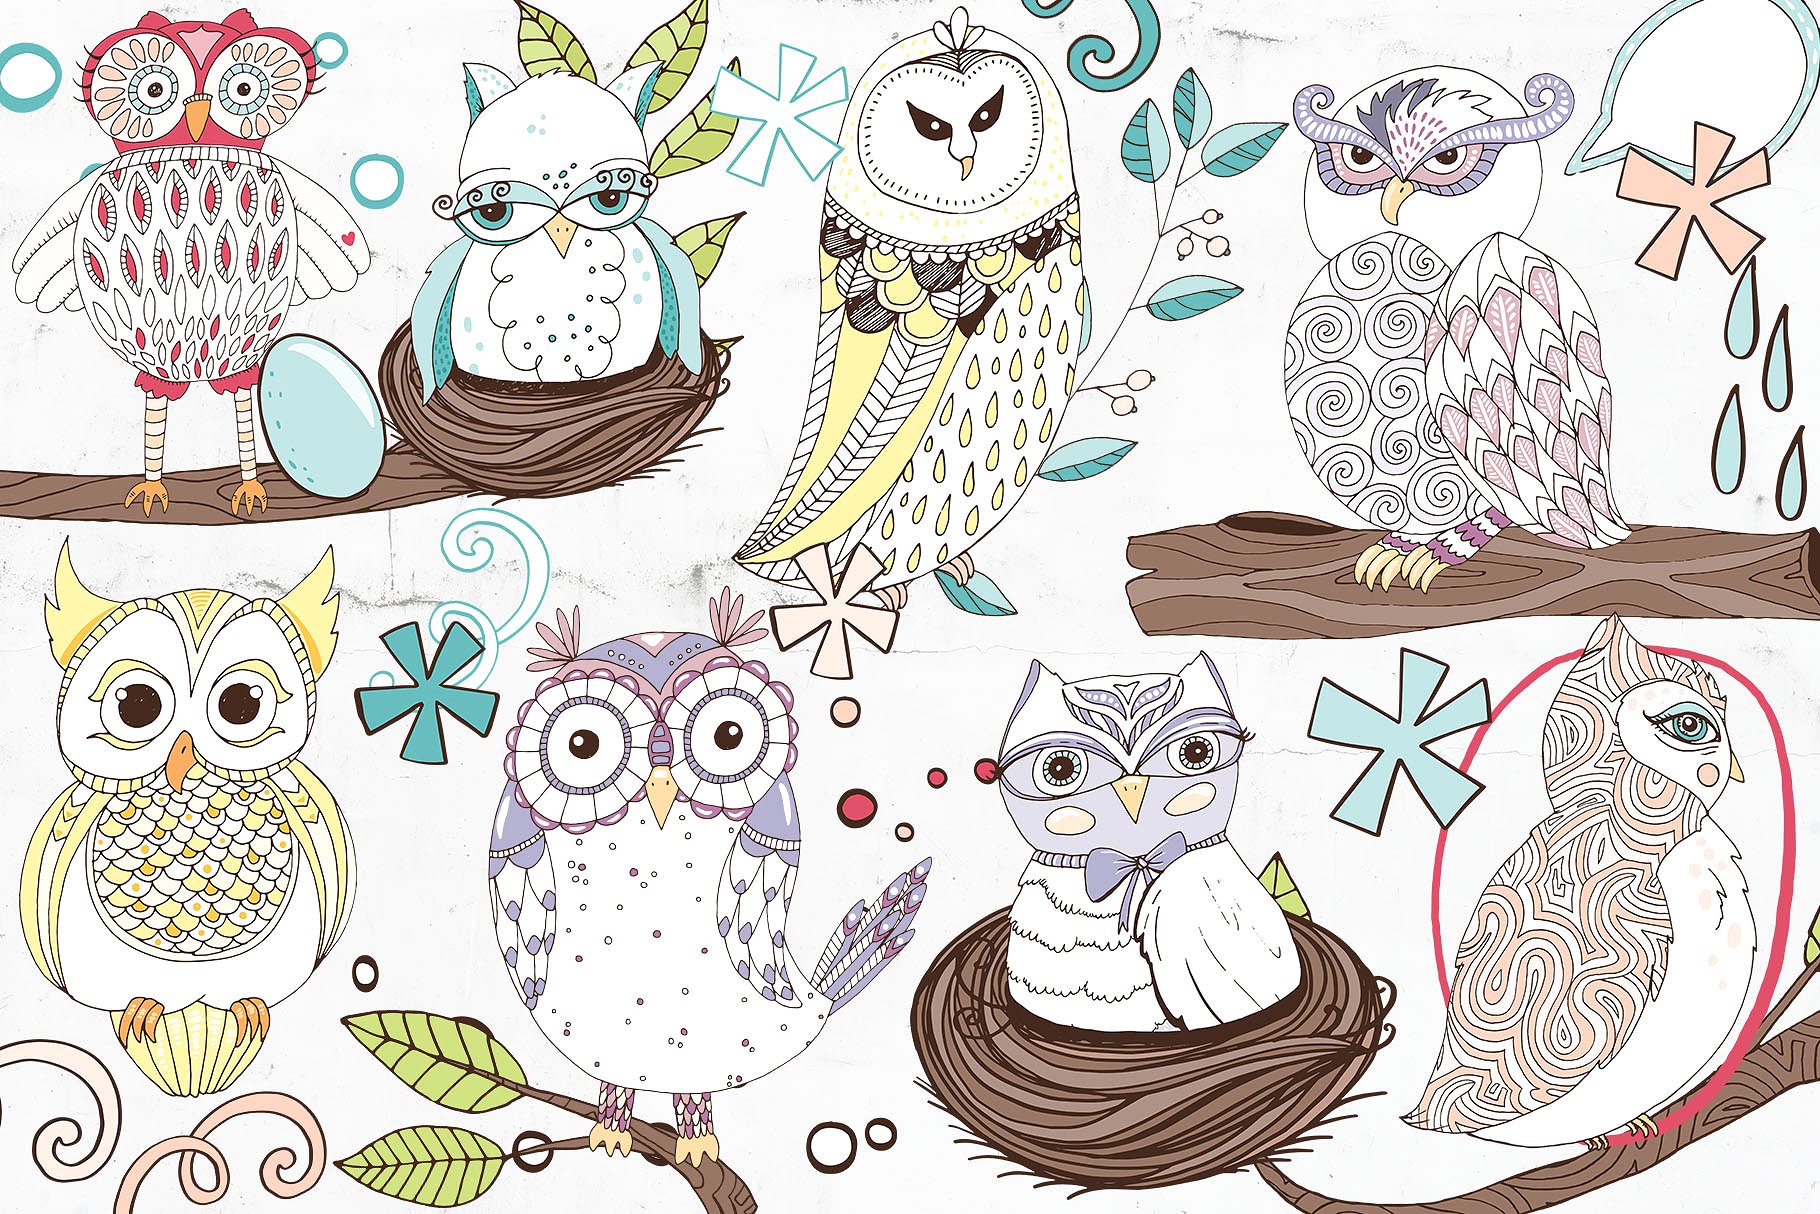 可爱猫头鹰矢量剪切画素材 Cute Owl Graphics Set插图(7)